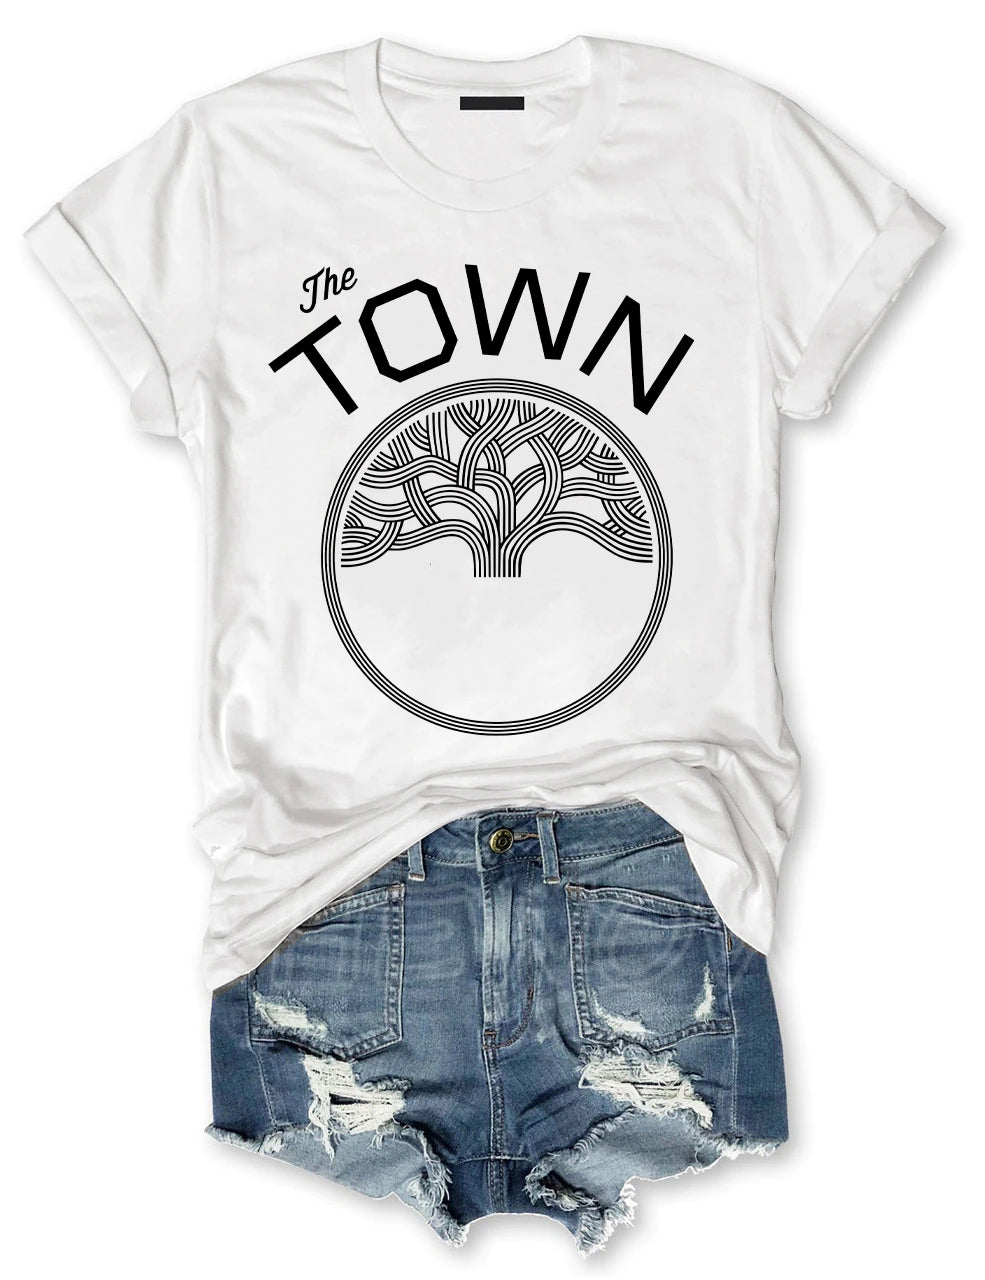 The Town Warriors T-shirt